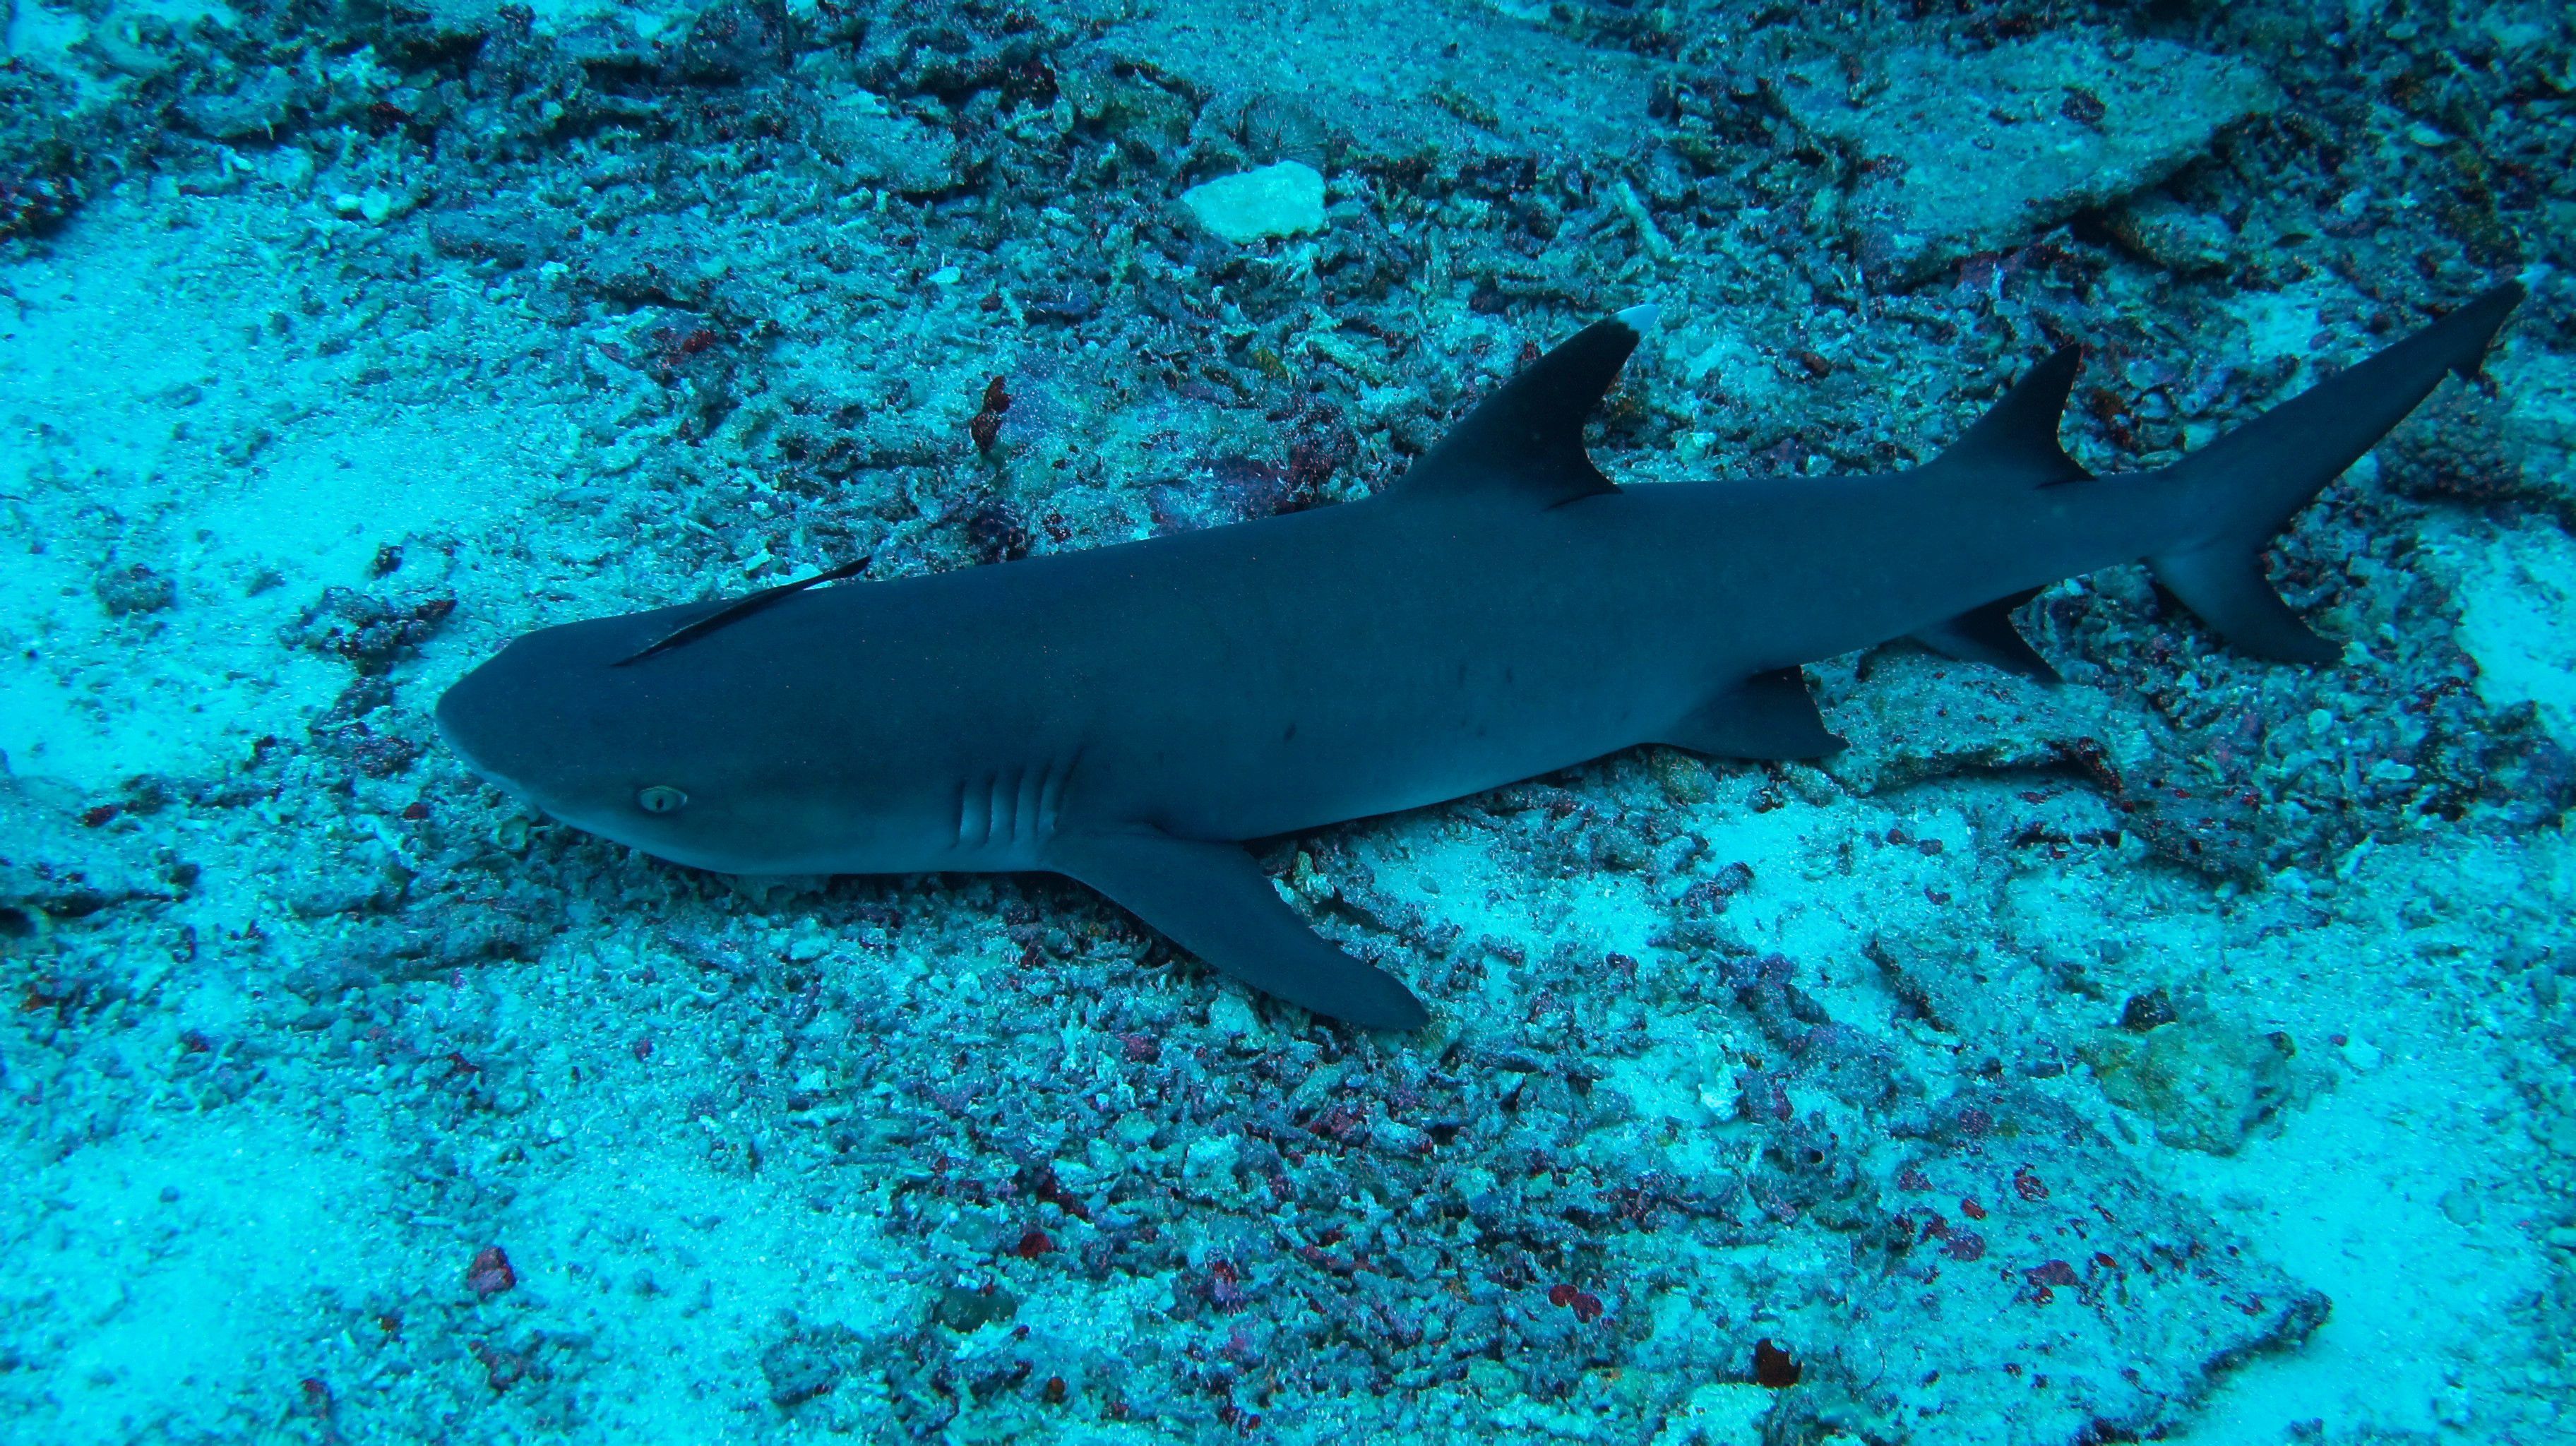 条纹斑竹鲨图片欣赏-海友网